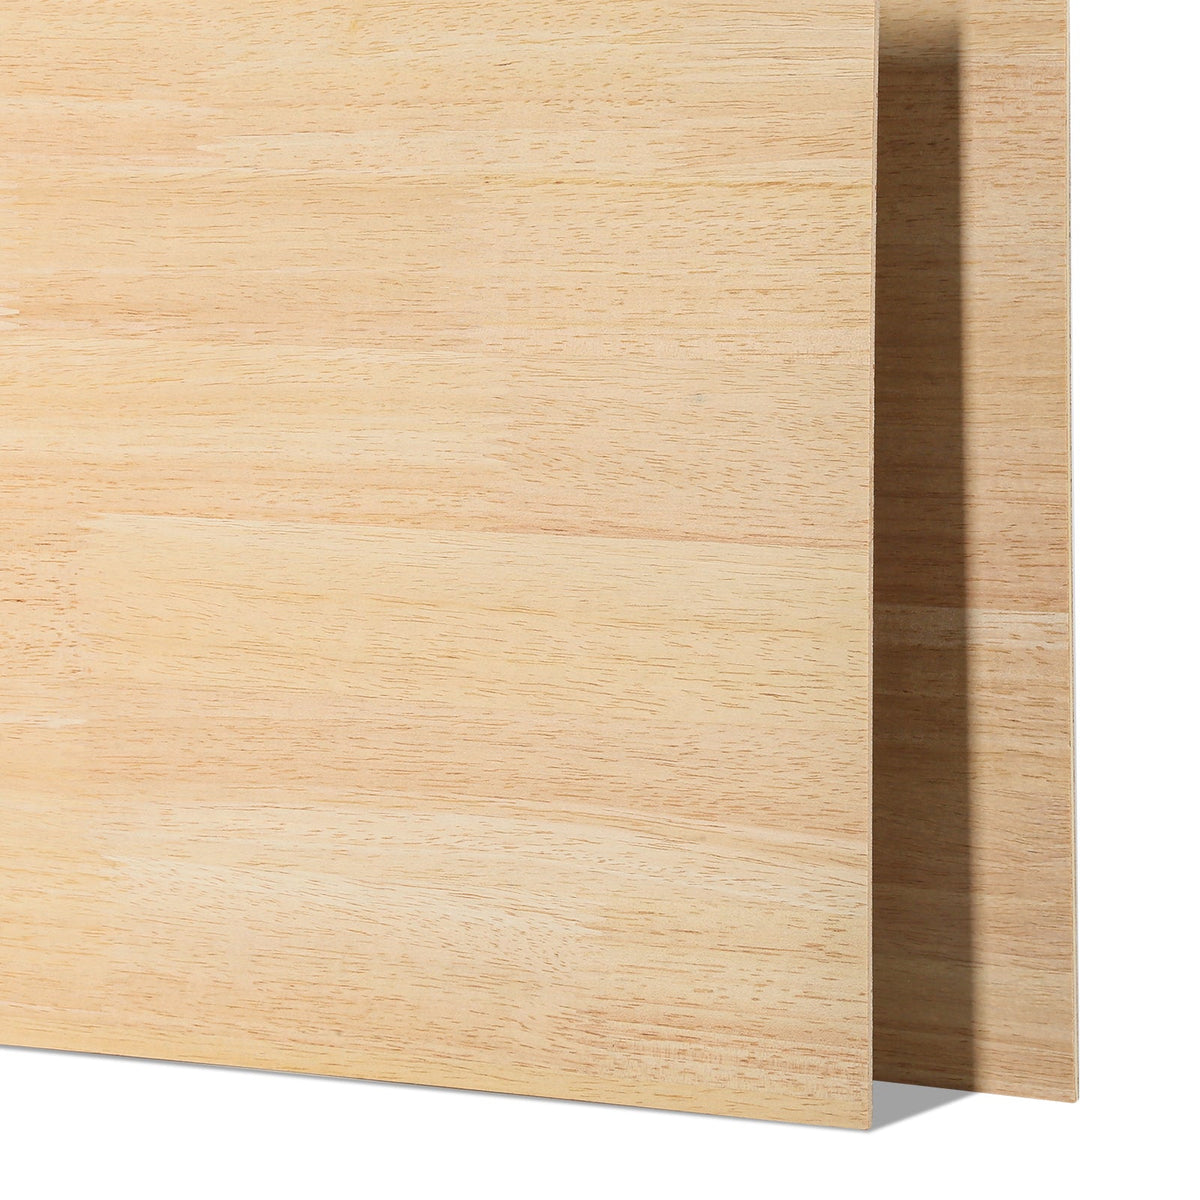 6 Stück Gummibaumholz, gespleißtes Sperrholz, 12 x 12, unbehandeltes Holz für Lasergravur, Schneiden, Basteln